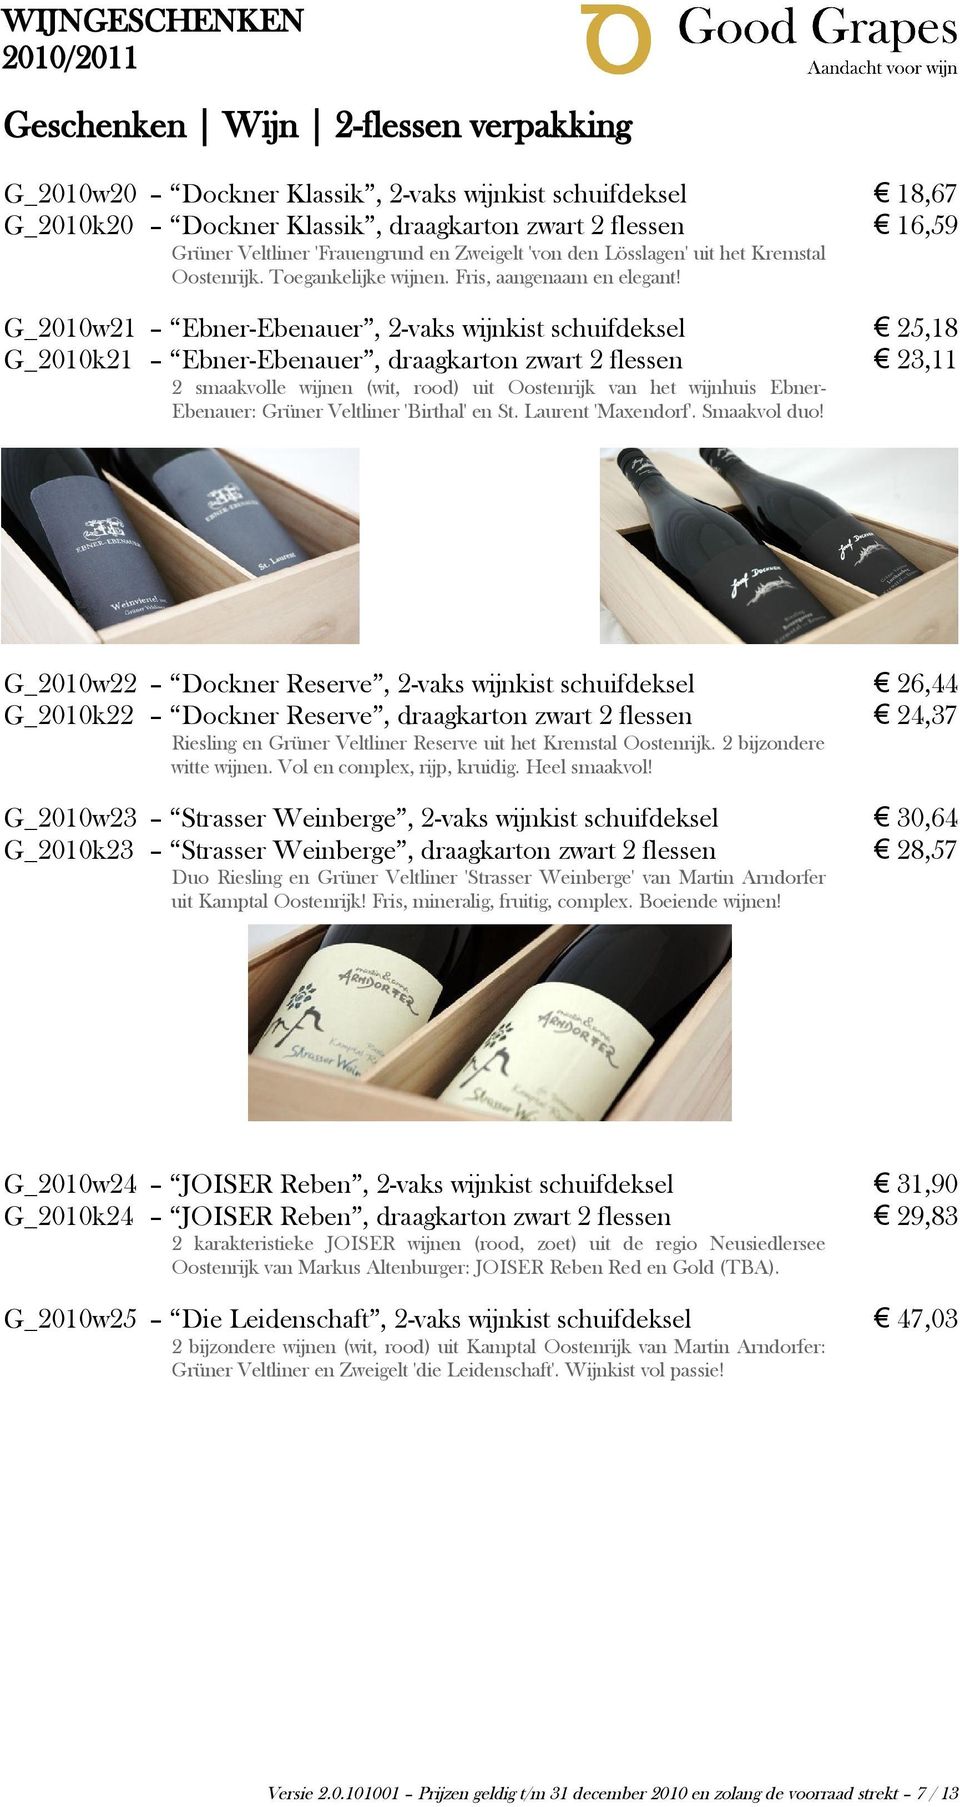 G_2010w21 Ebner-Ebenauer, 2-vaks wijnkist schuifdeksel 25,18 G_2010k21 Ebner-Ebenauer, draagkarton zwart 2 flessen 23,11 2 smaakvolle wijnen (wit, rood) uit Oostenrijk van het wijnhuis Ebner-